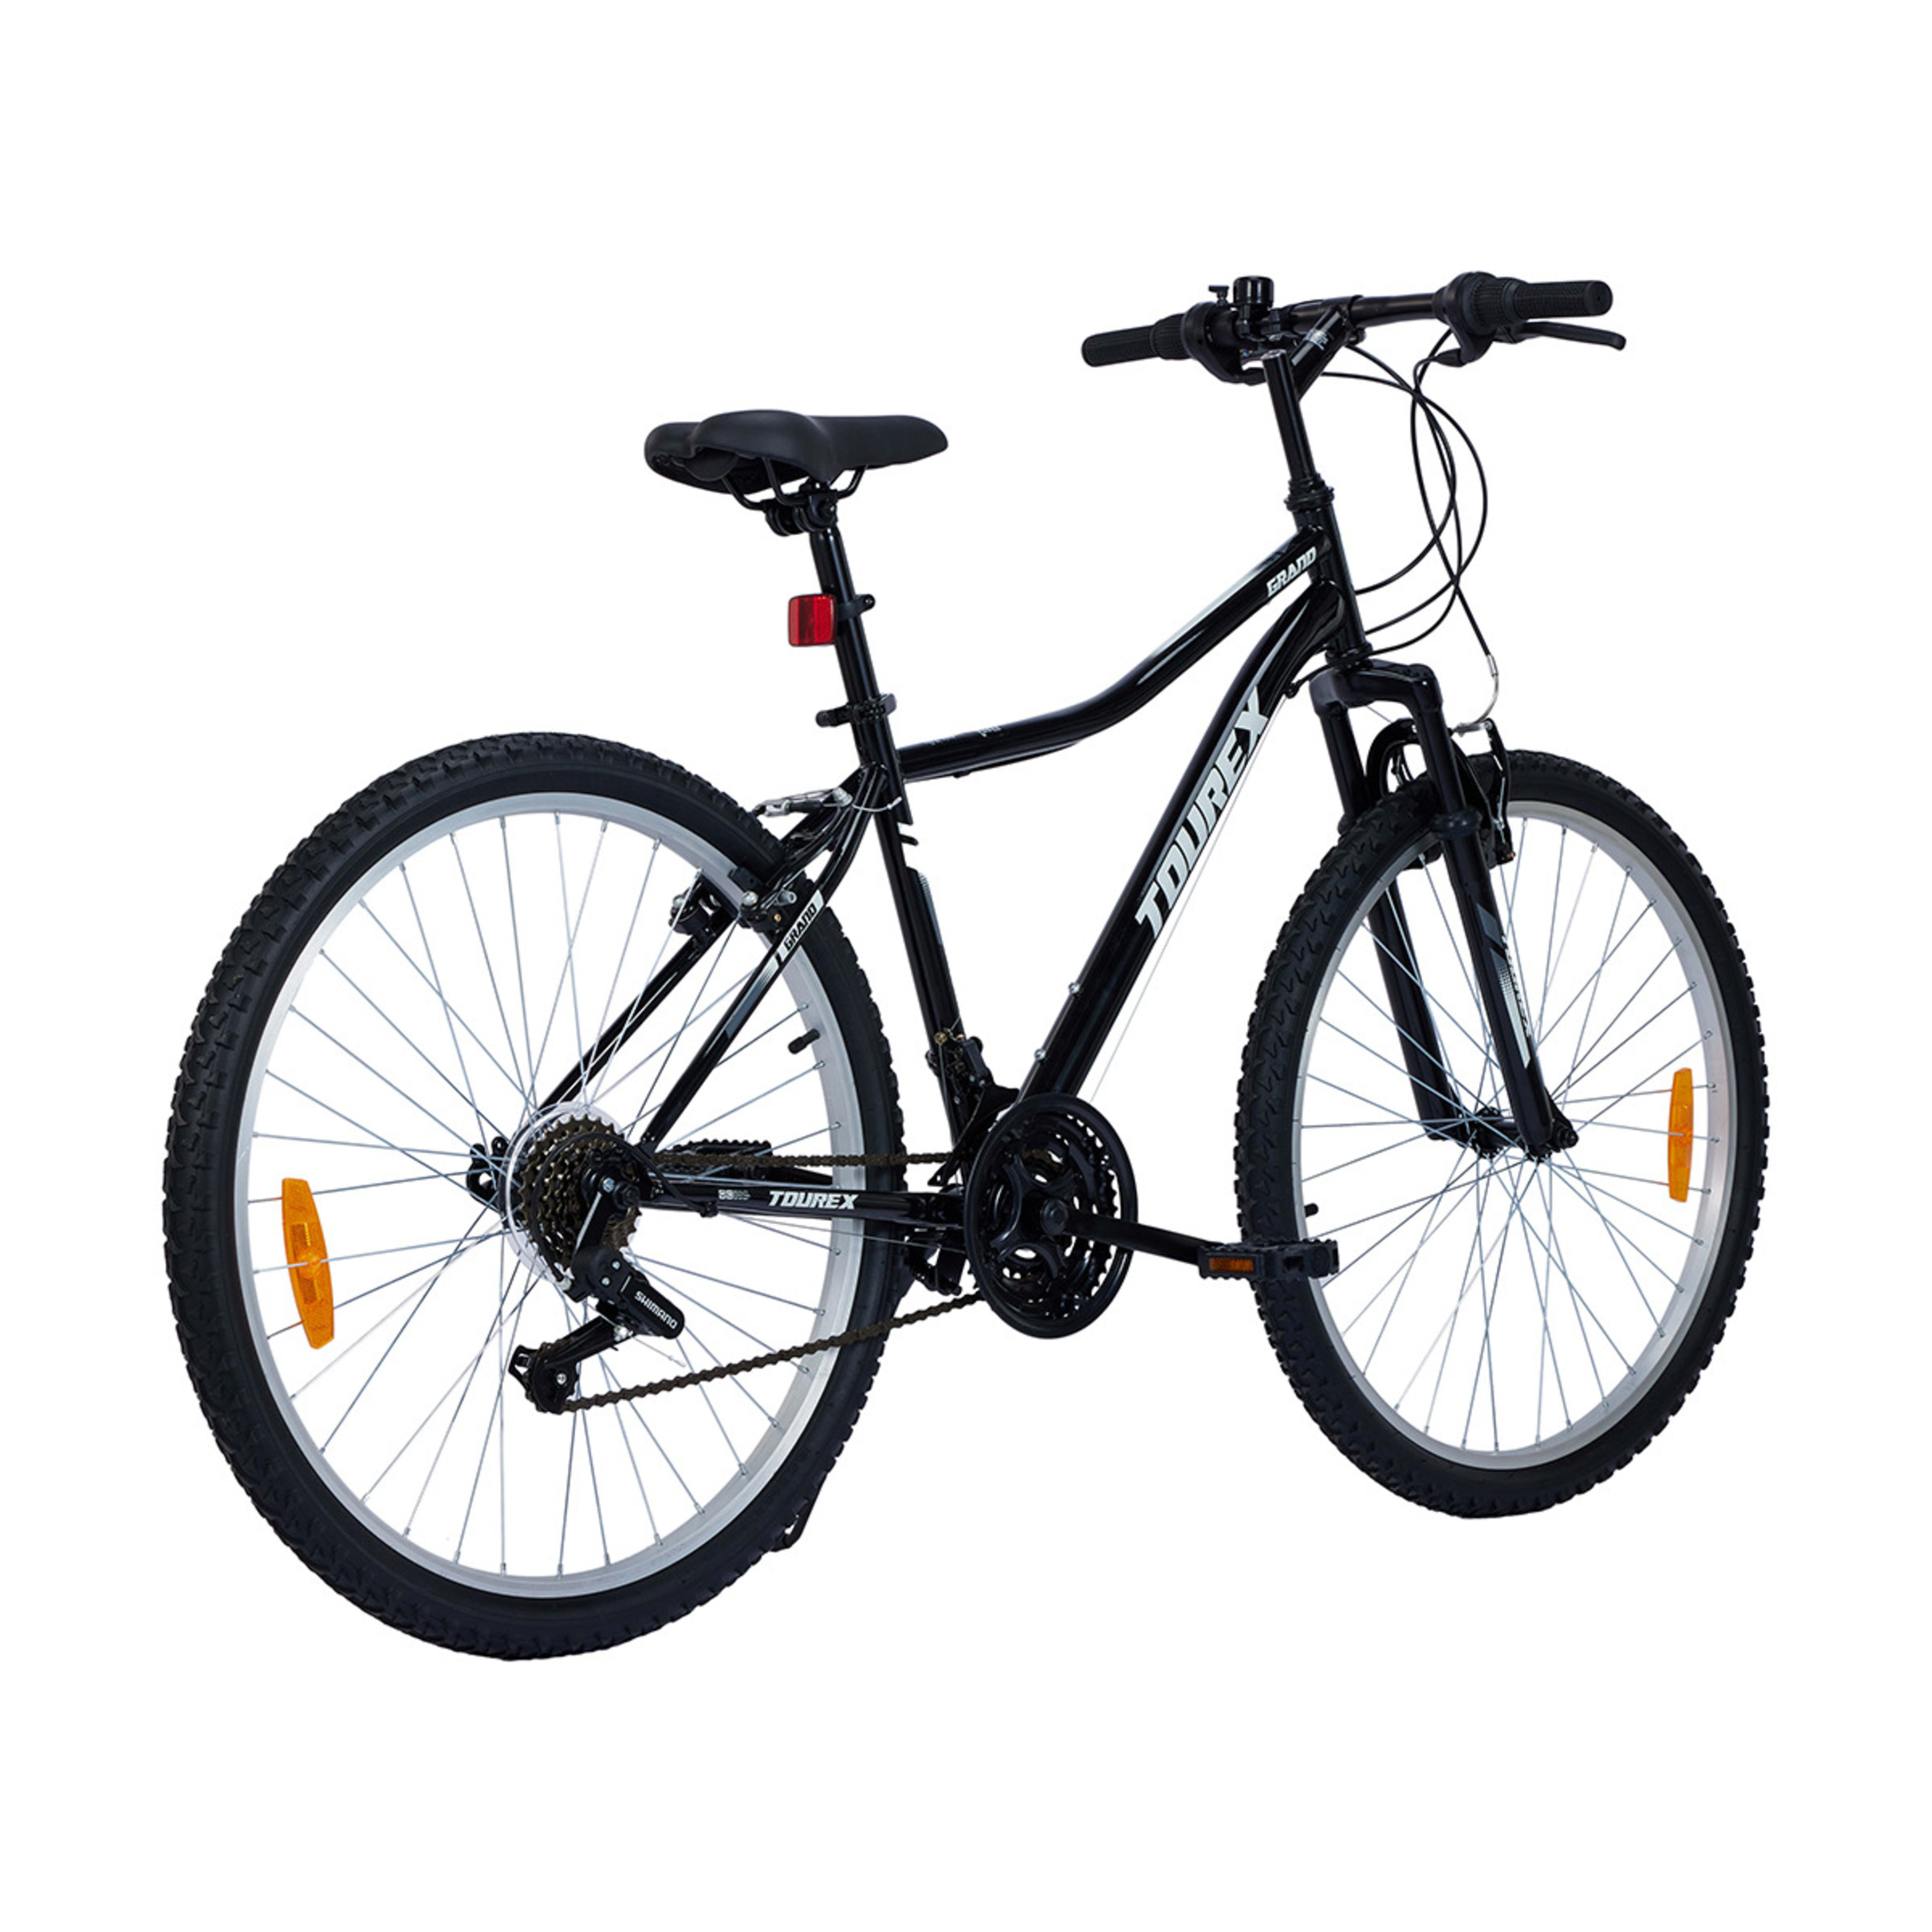 66cm Tourex Bike - Kmart